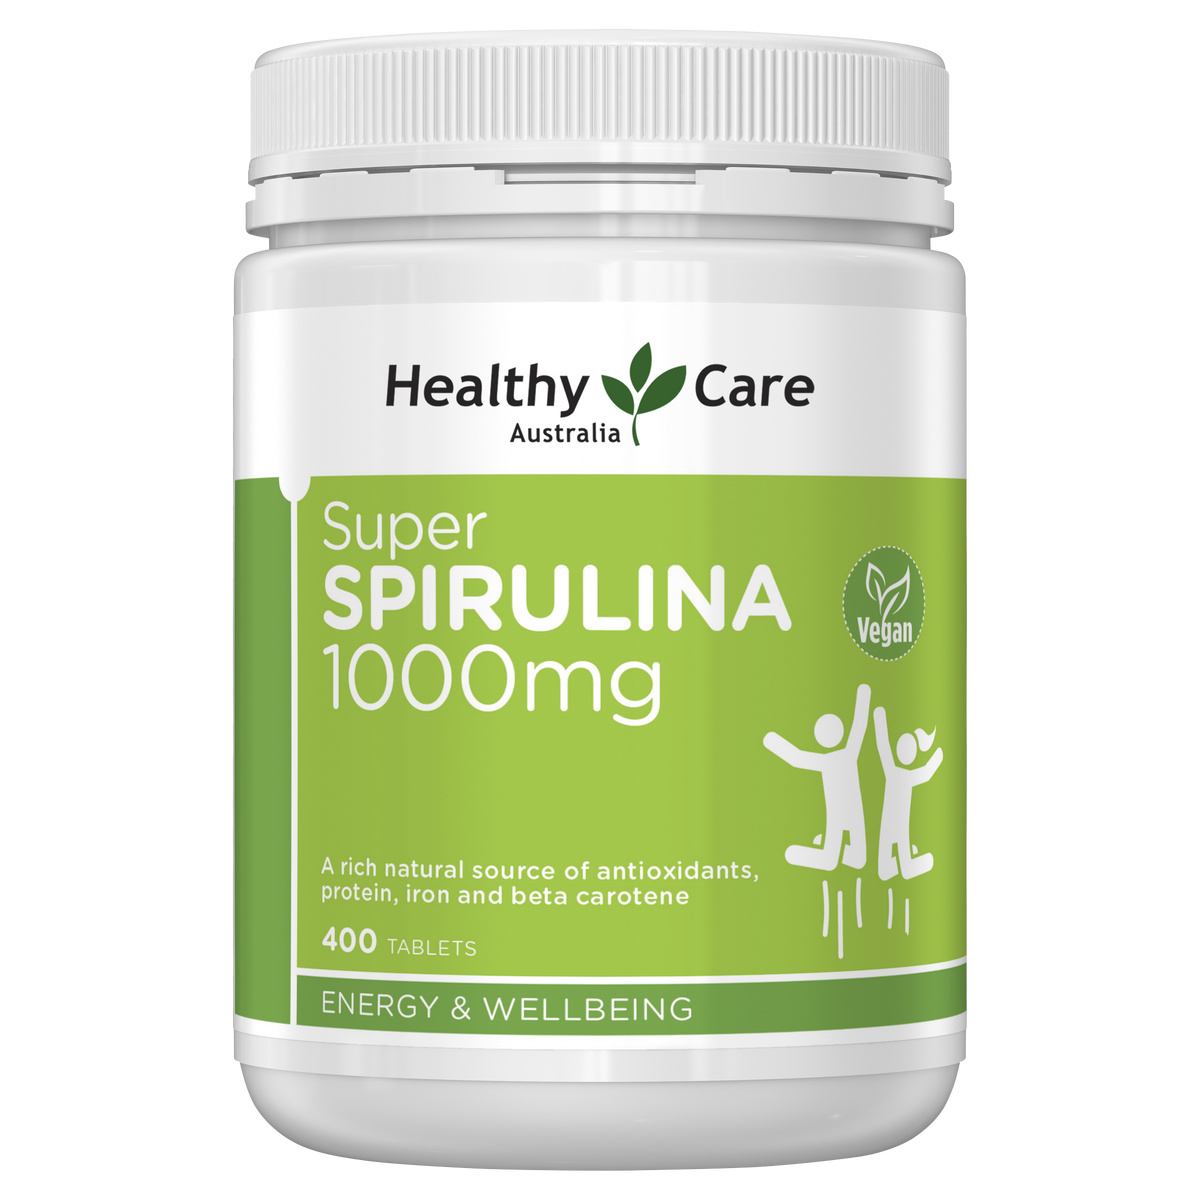 Healthy Care Super Spirulina 1000mg - 400 Tablets